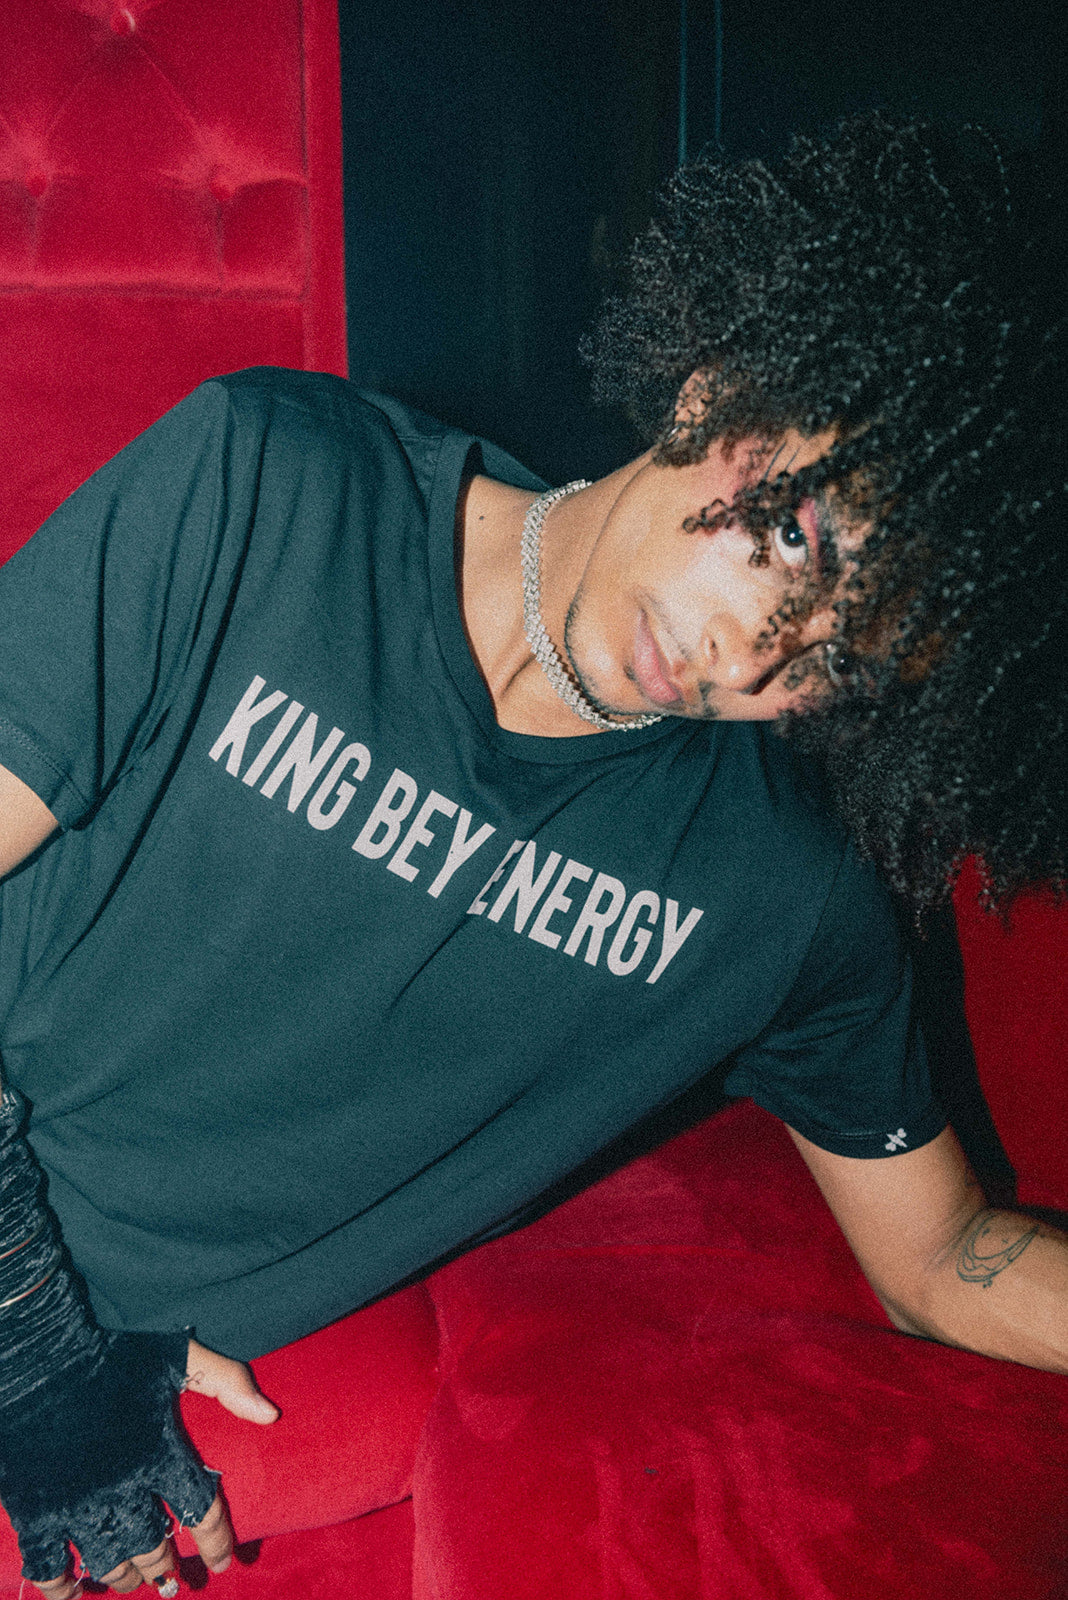 King Bey Energy